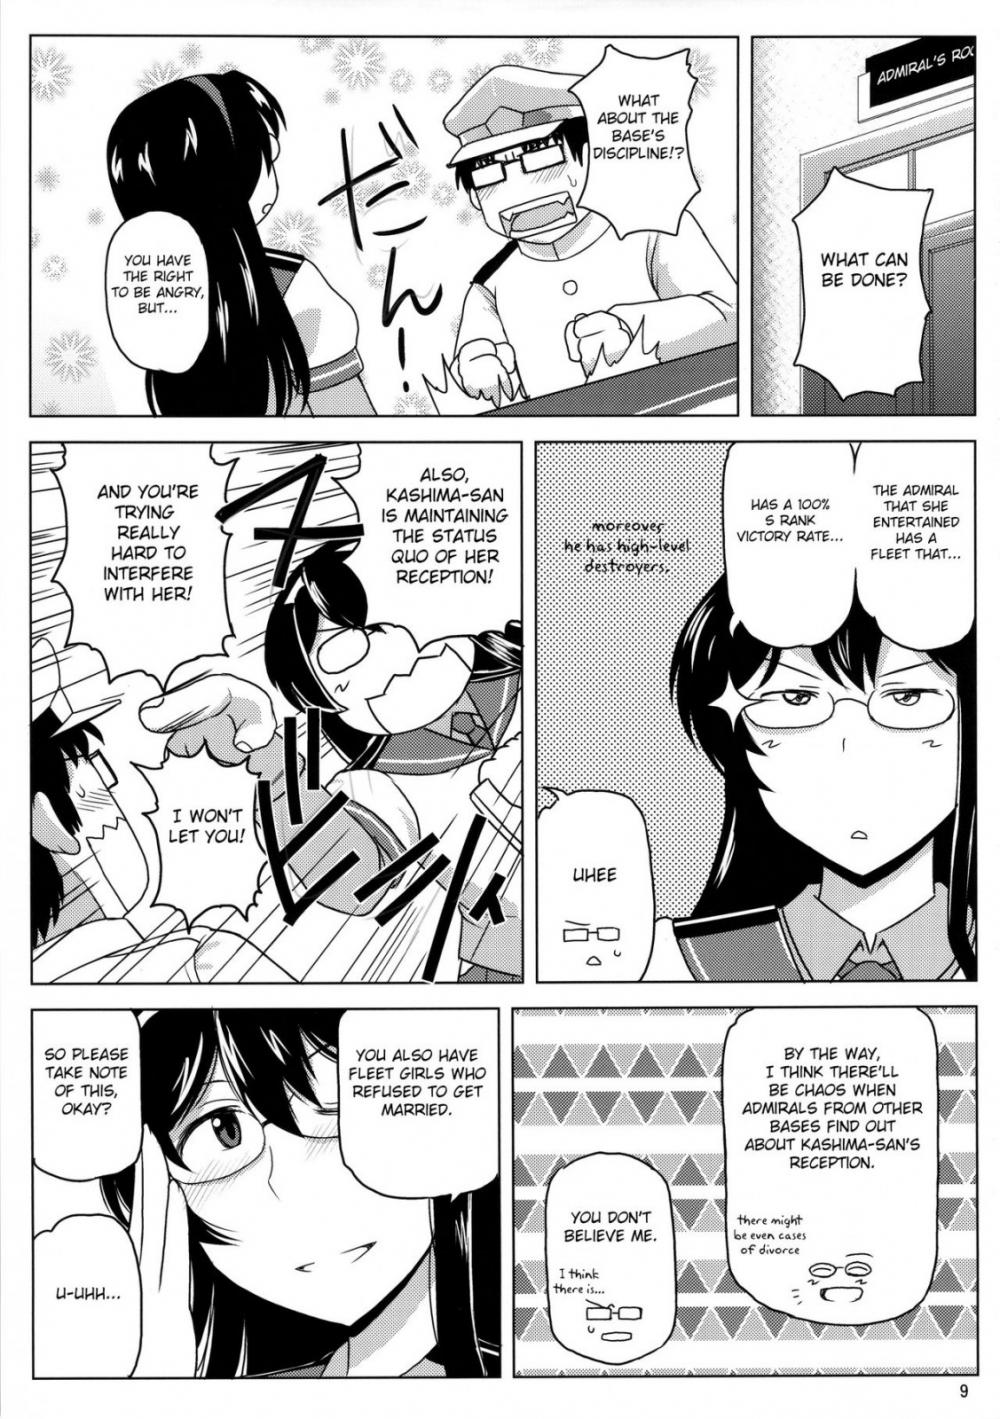 Hentai Manga Comic-A Story About Kashima Being A Lewd Bitch-Read-10